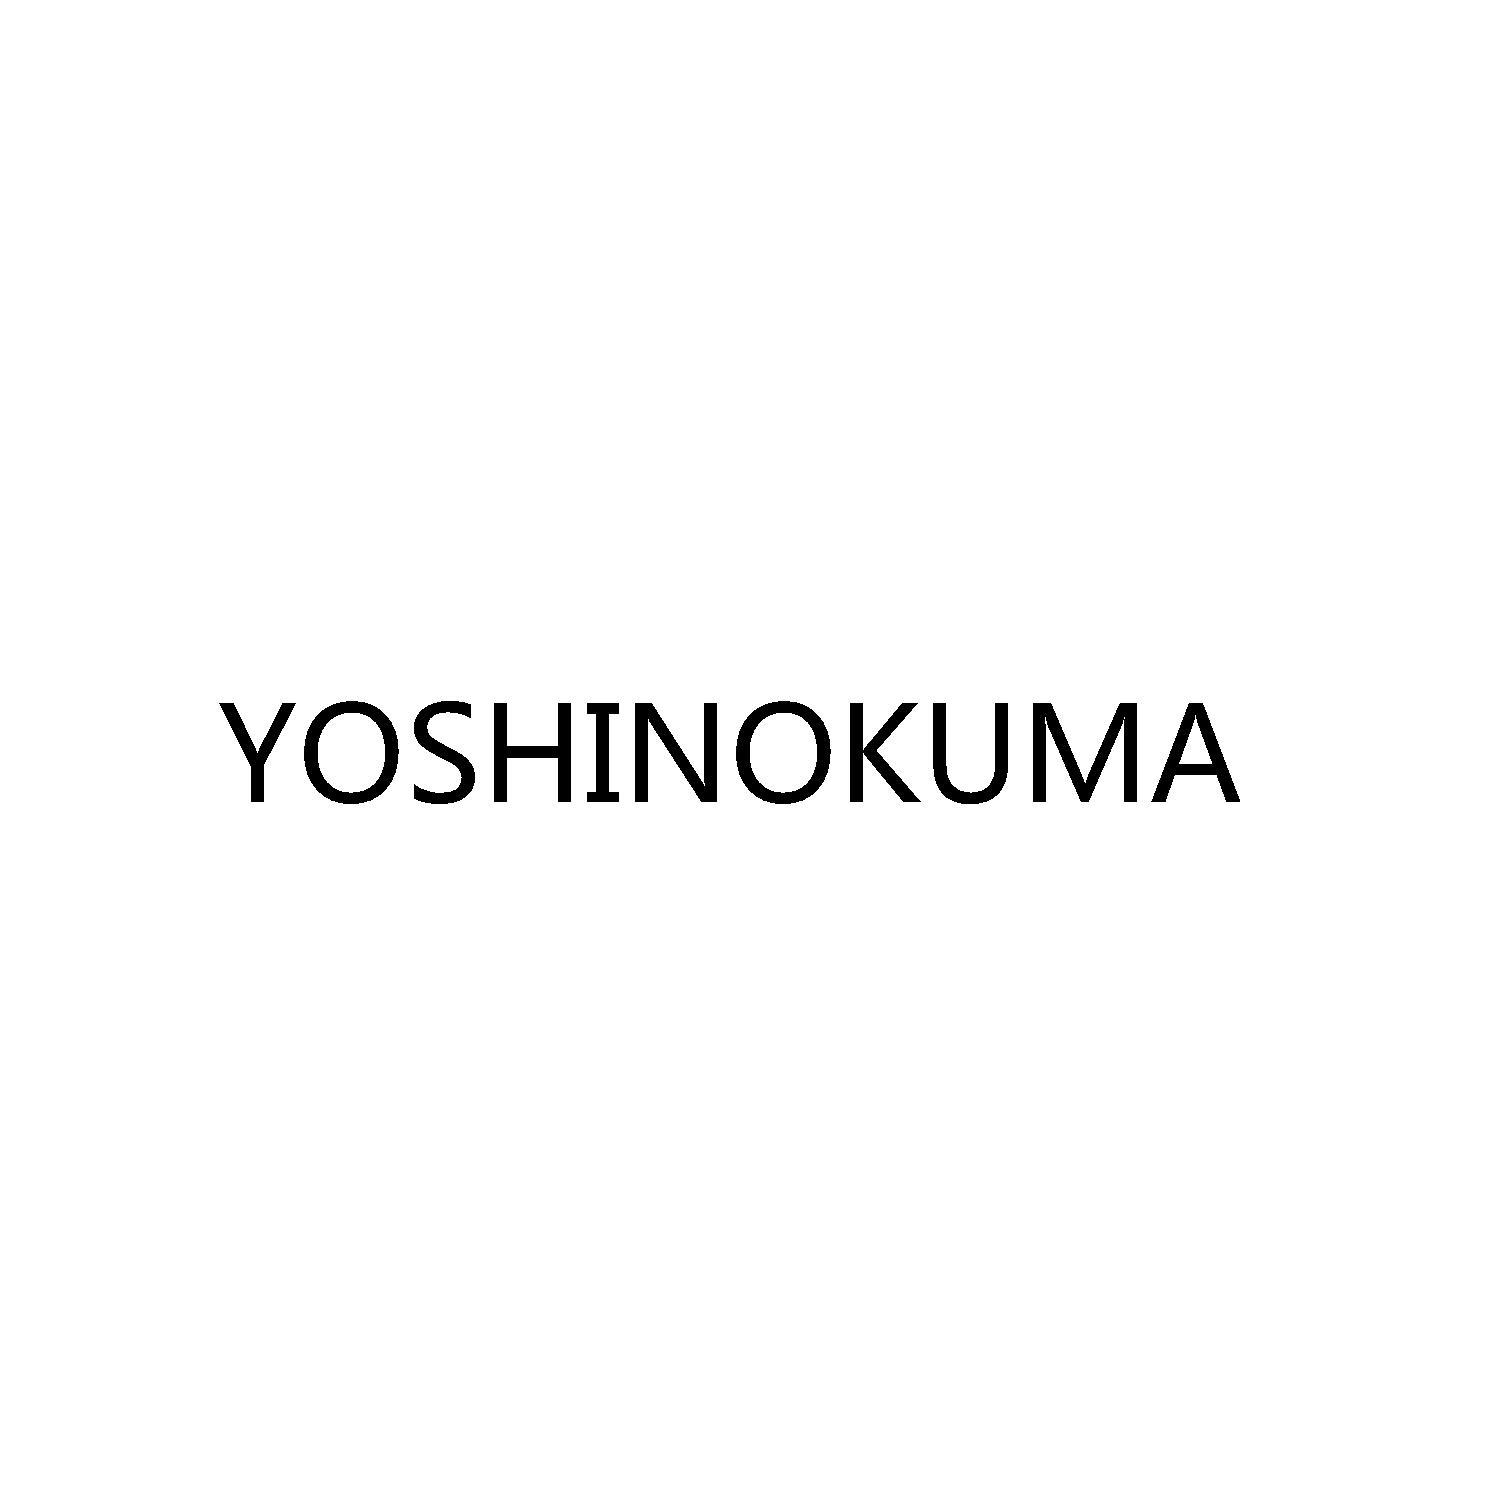 YOSHINOKUMA 商标公告